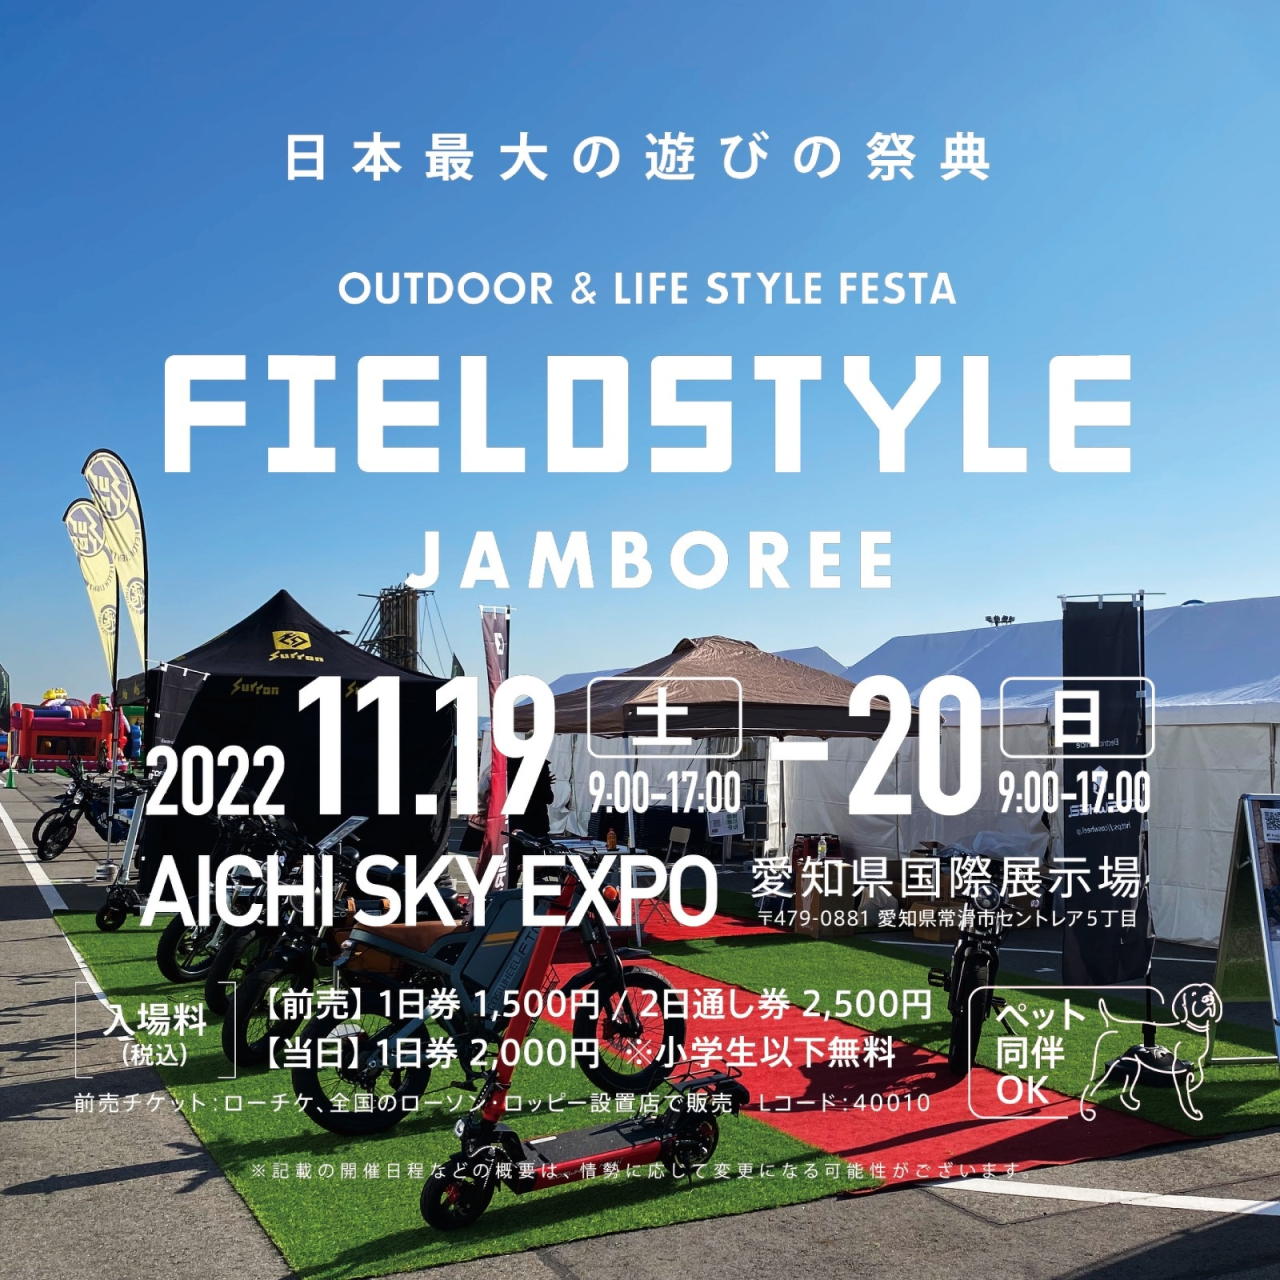 日本最大級の遊びの祭典“FIELDSTYLE JAMBOREE 2022”に出展